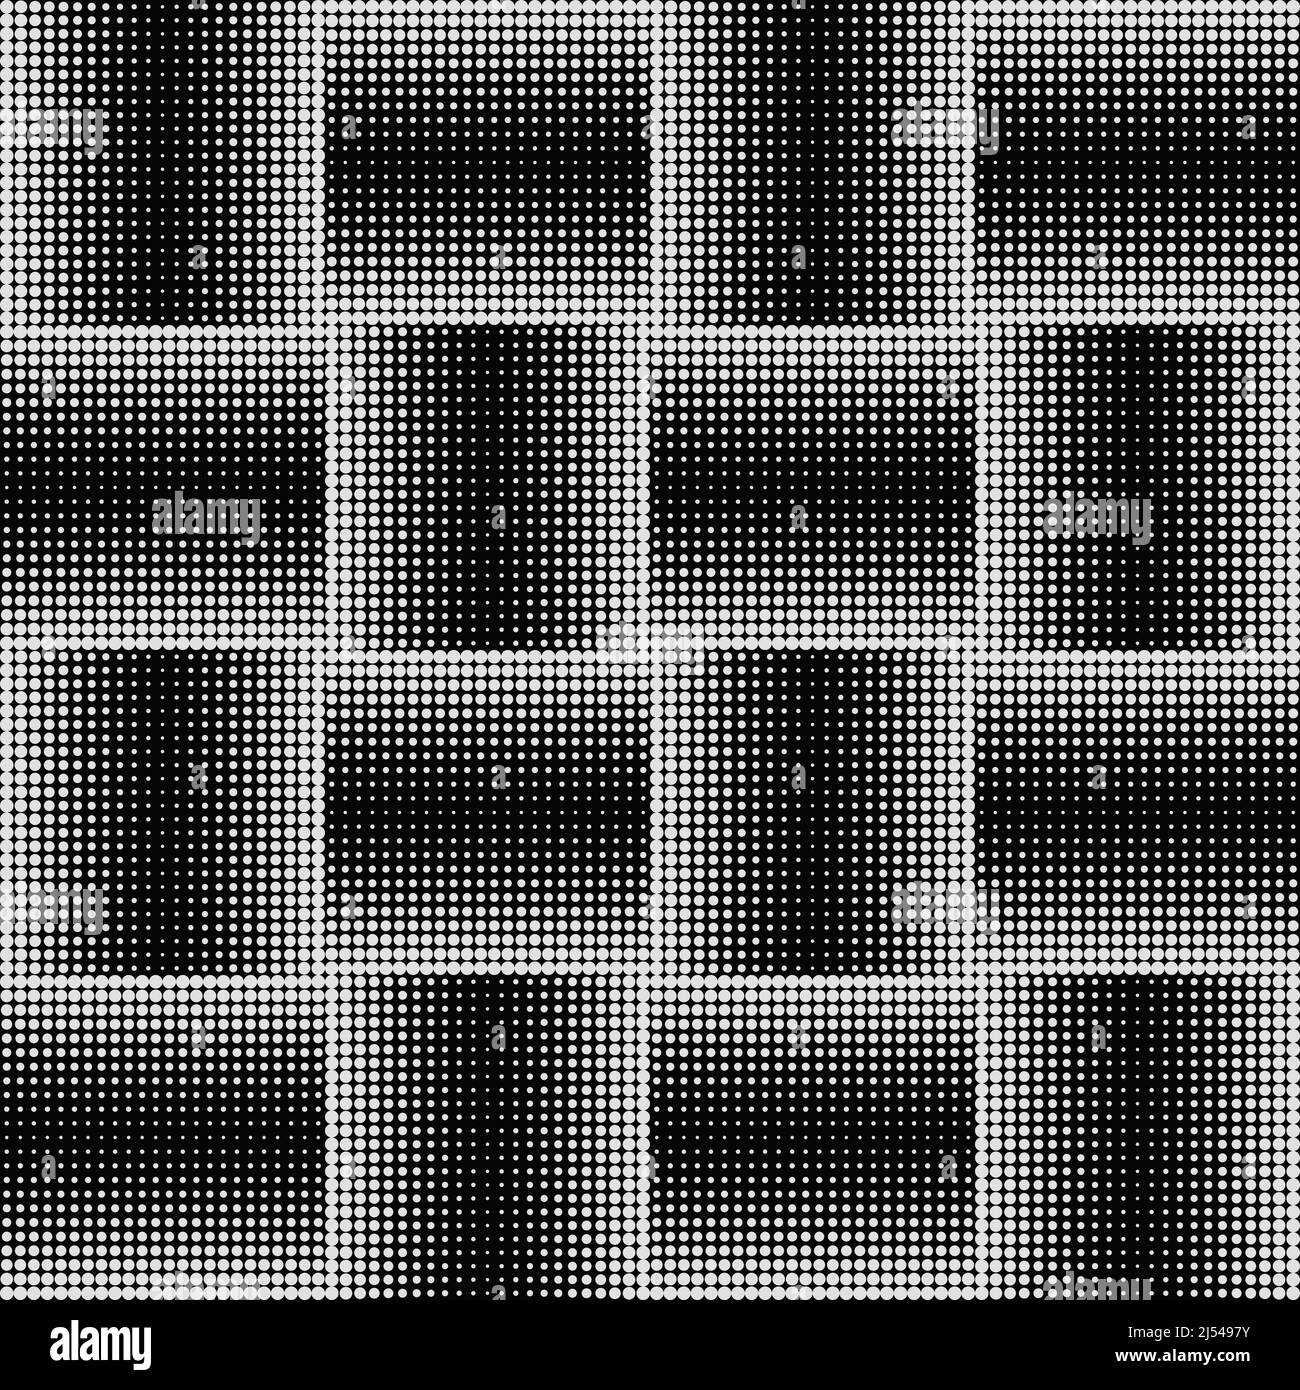 Grafica vettoriale monocromatica astratta con effetto di transizione digitale. Modello futuristico in stile brutalista costruito con forme geometriche distorte. Illustrazione Vettoriale